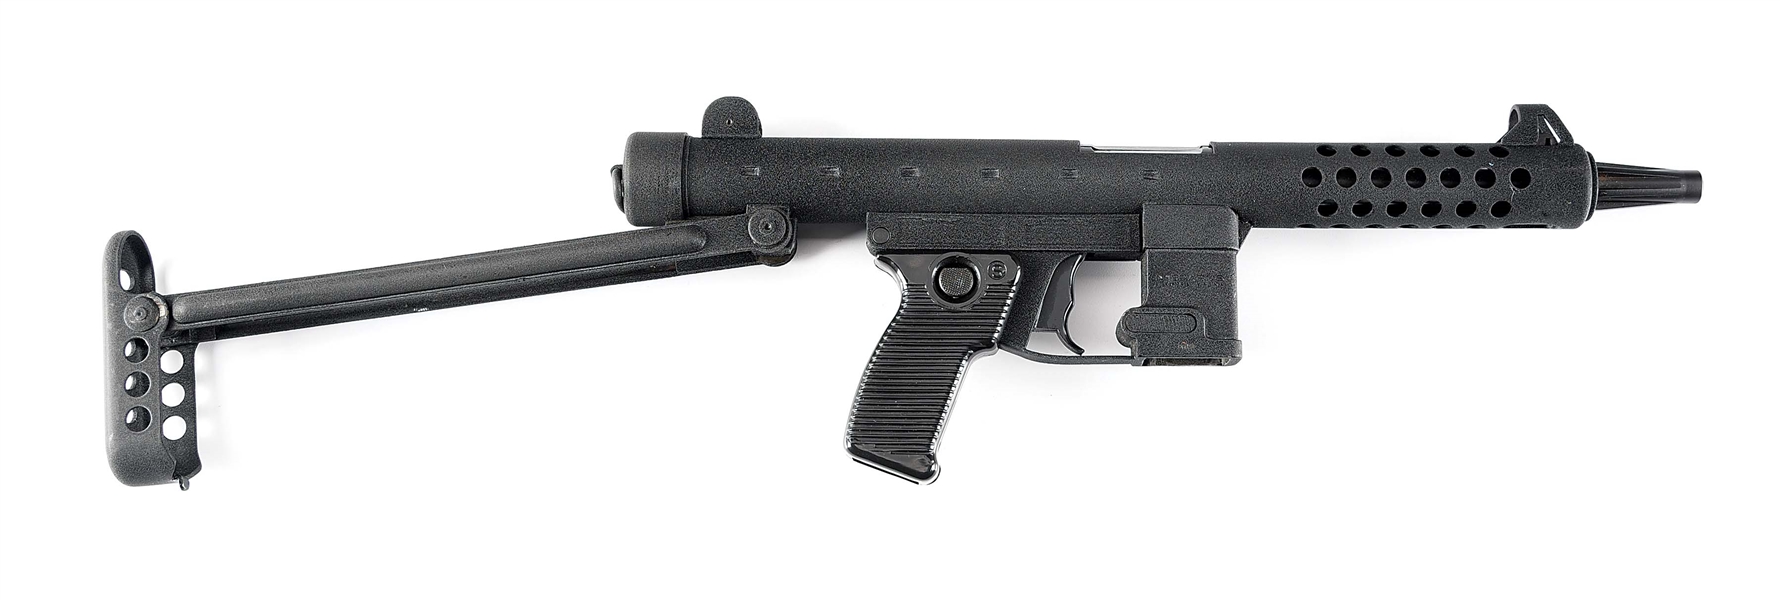 (N) STAR / INTERARMS Z-70 SUBMACHINE GUN (PRE-86 DEALER SAMPLE).